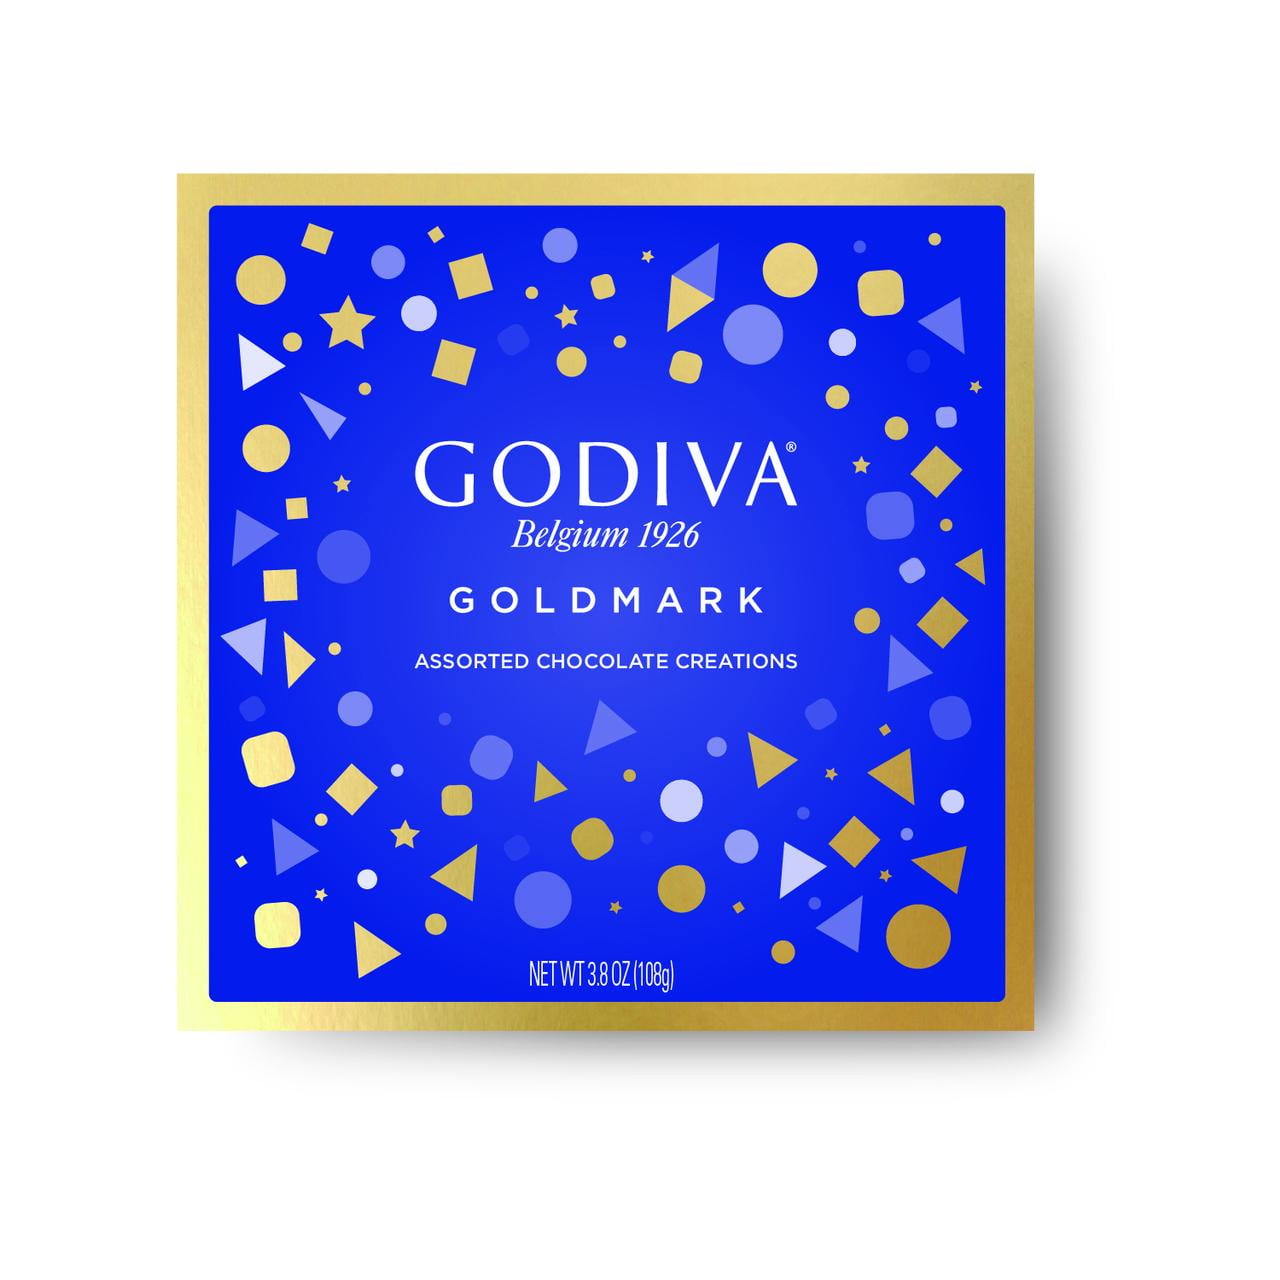 Godiva Goldmark Gift Box, 3.8 oz., 9 pc.